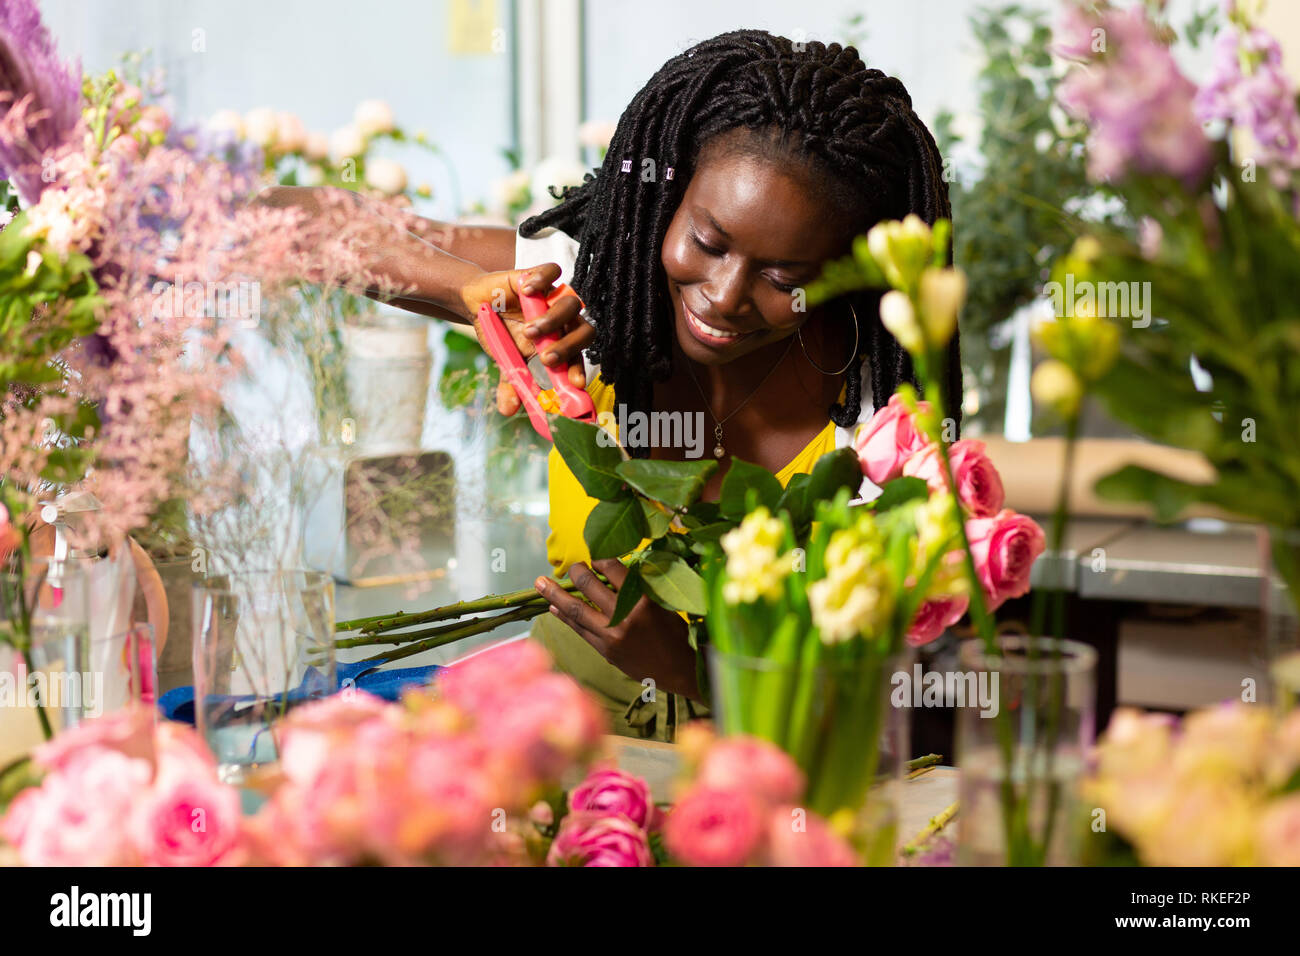 Belle fleuriste international en prenant soin de fleurs Banque D'Images